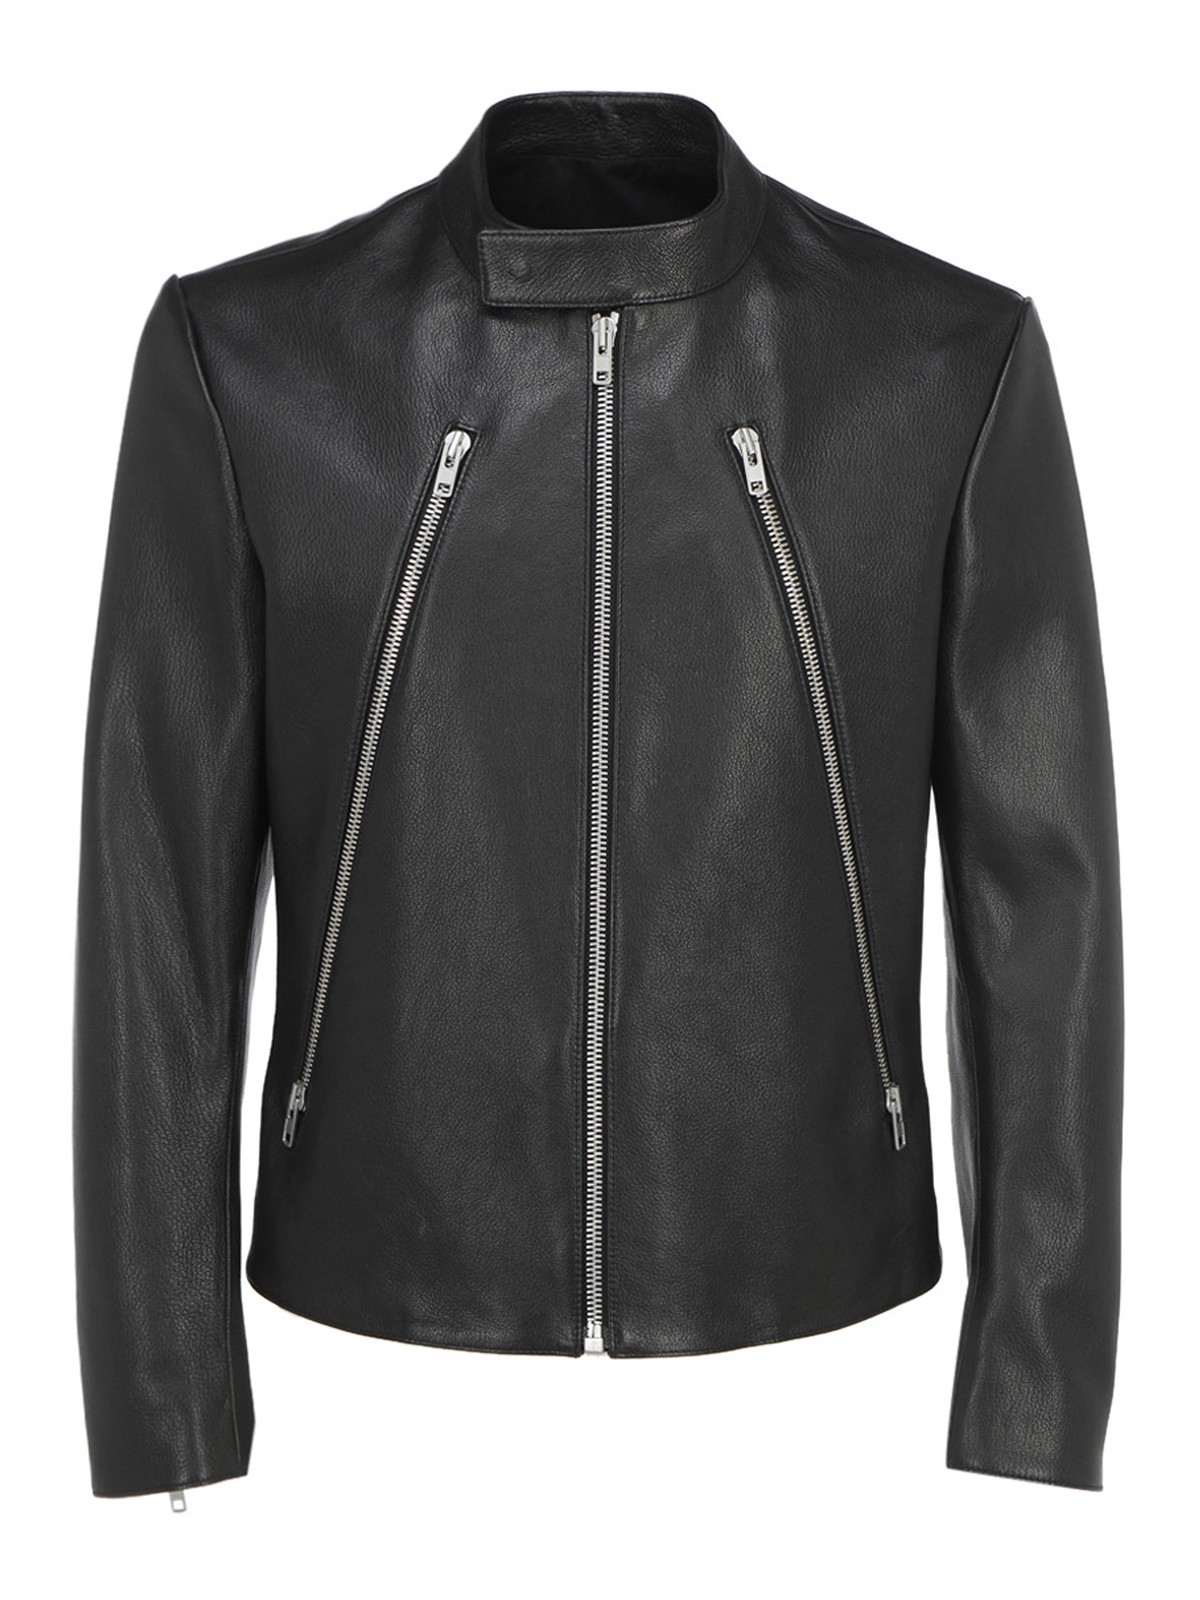 Leather jacket Maison Margiela - Leather biker jacket - S50AM0512SY1273900